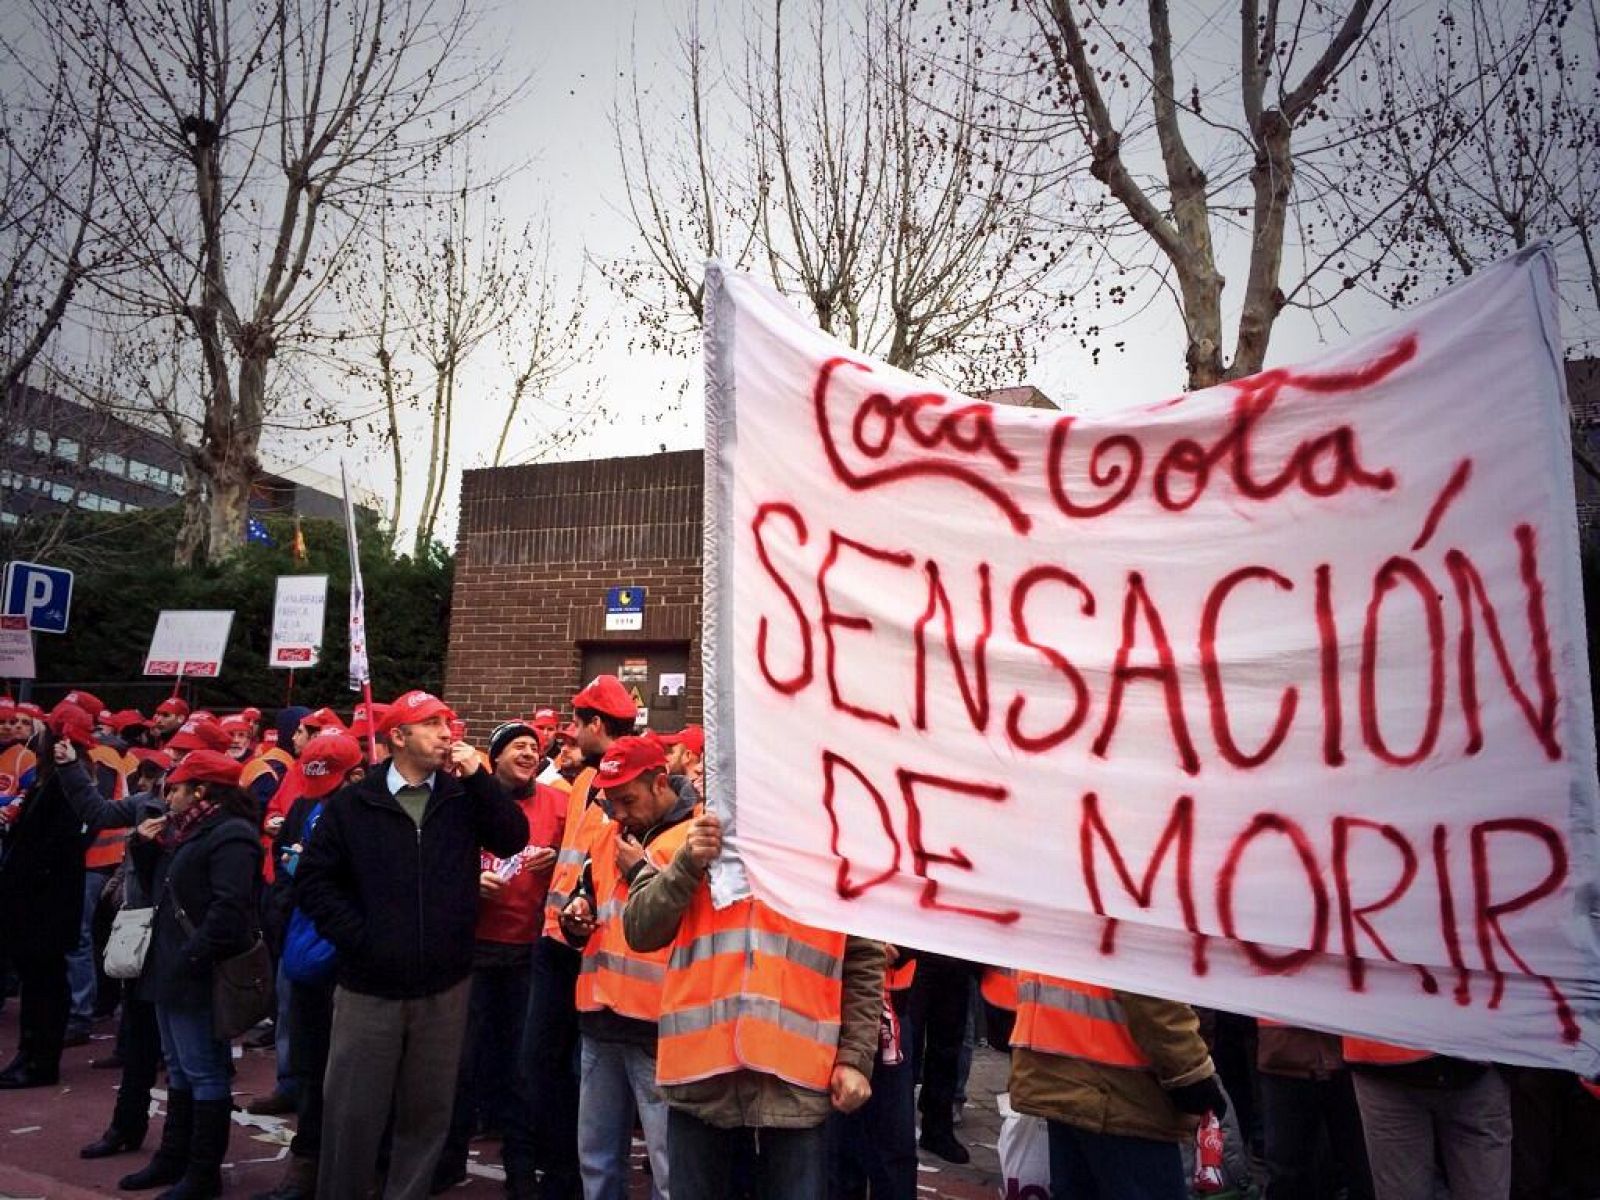 Un grupo de trabajadores enarbola una pancarta que reza "Coca-Cola, sensación de morir".